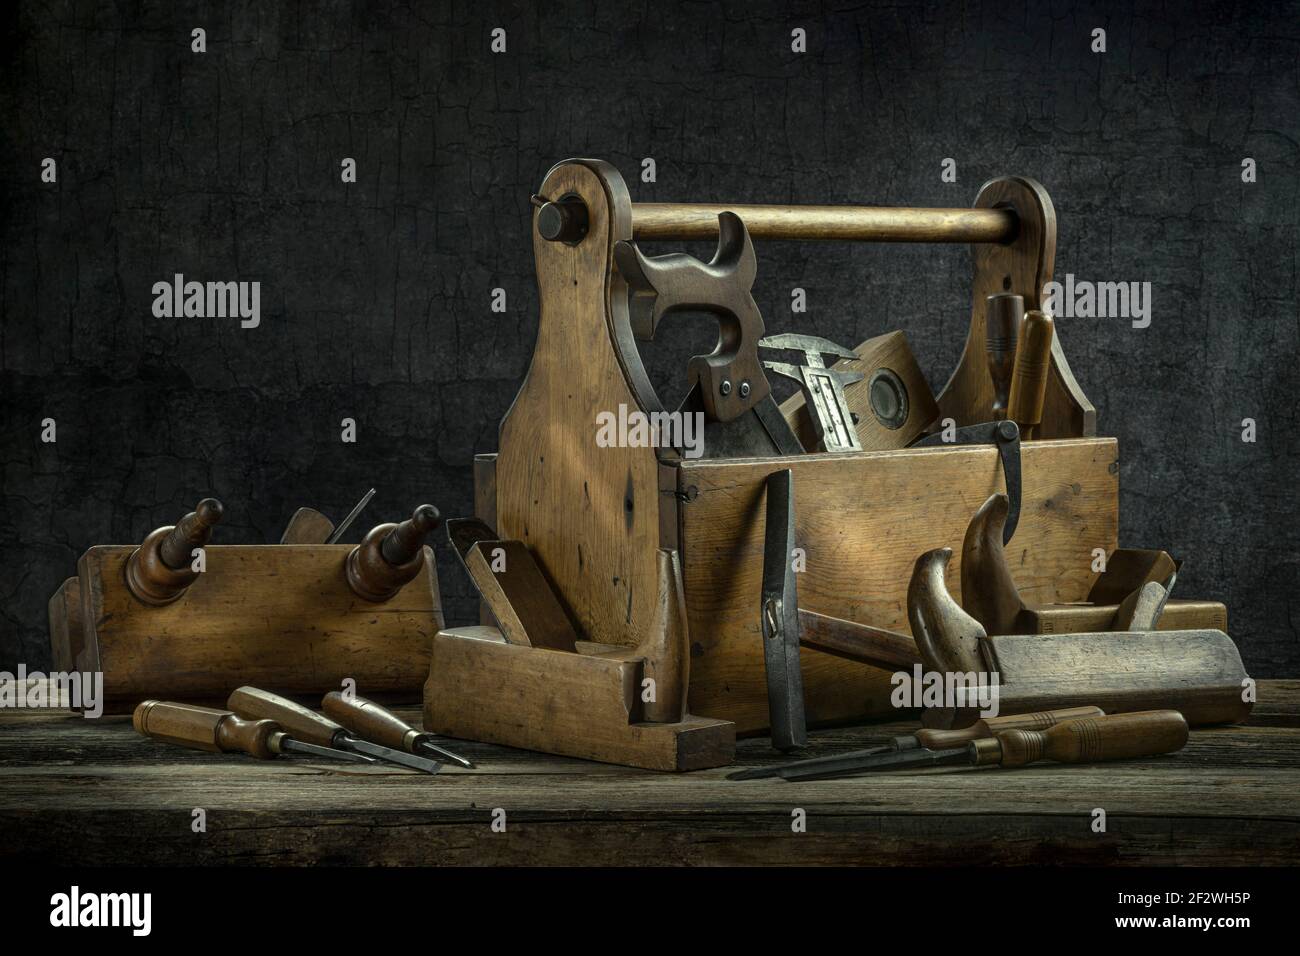 Stillleben - alte hölzerne Werkzeugkiste voll Werkzeuge - Flugzeug, Meißel, Ausgußel, Hammer Stockfoto